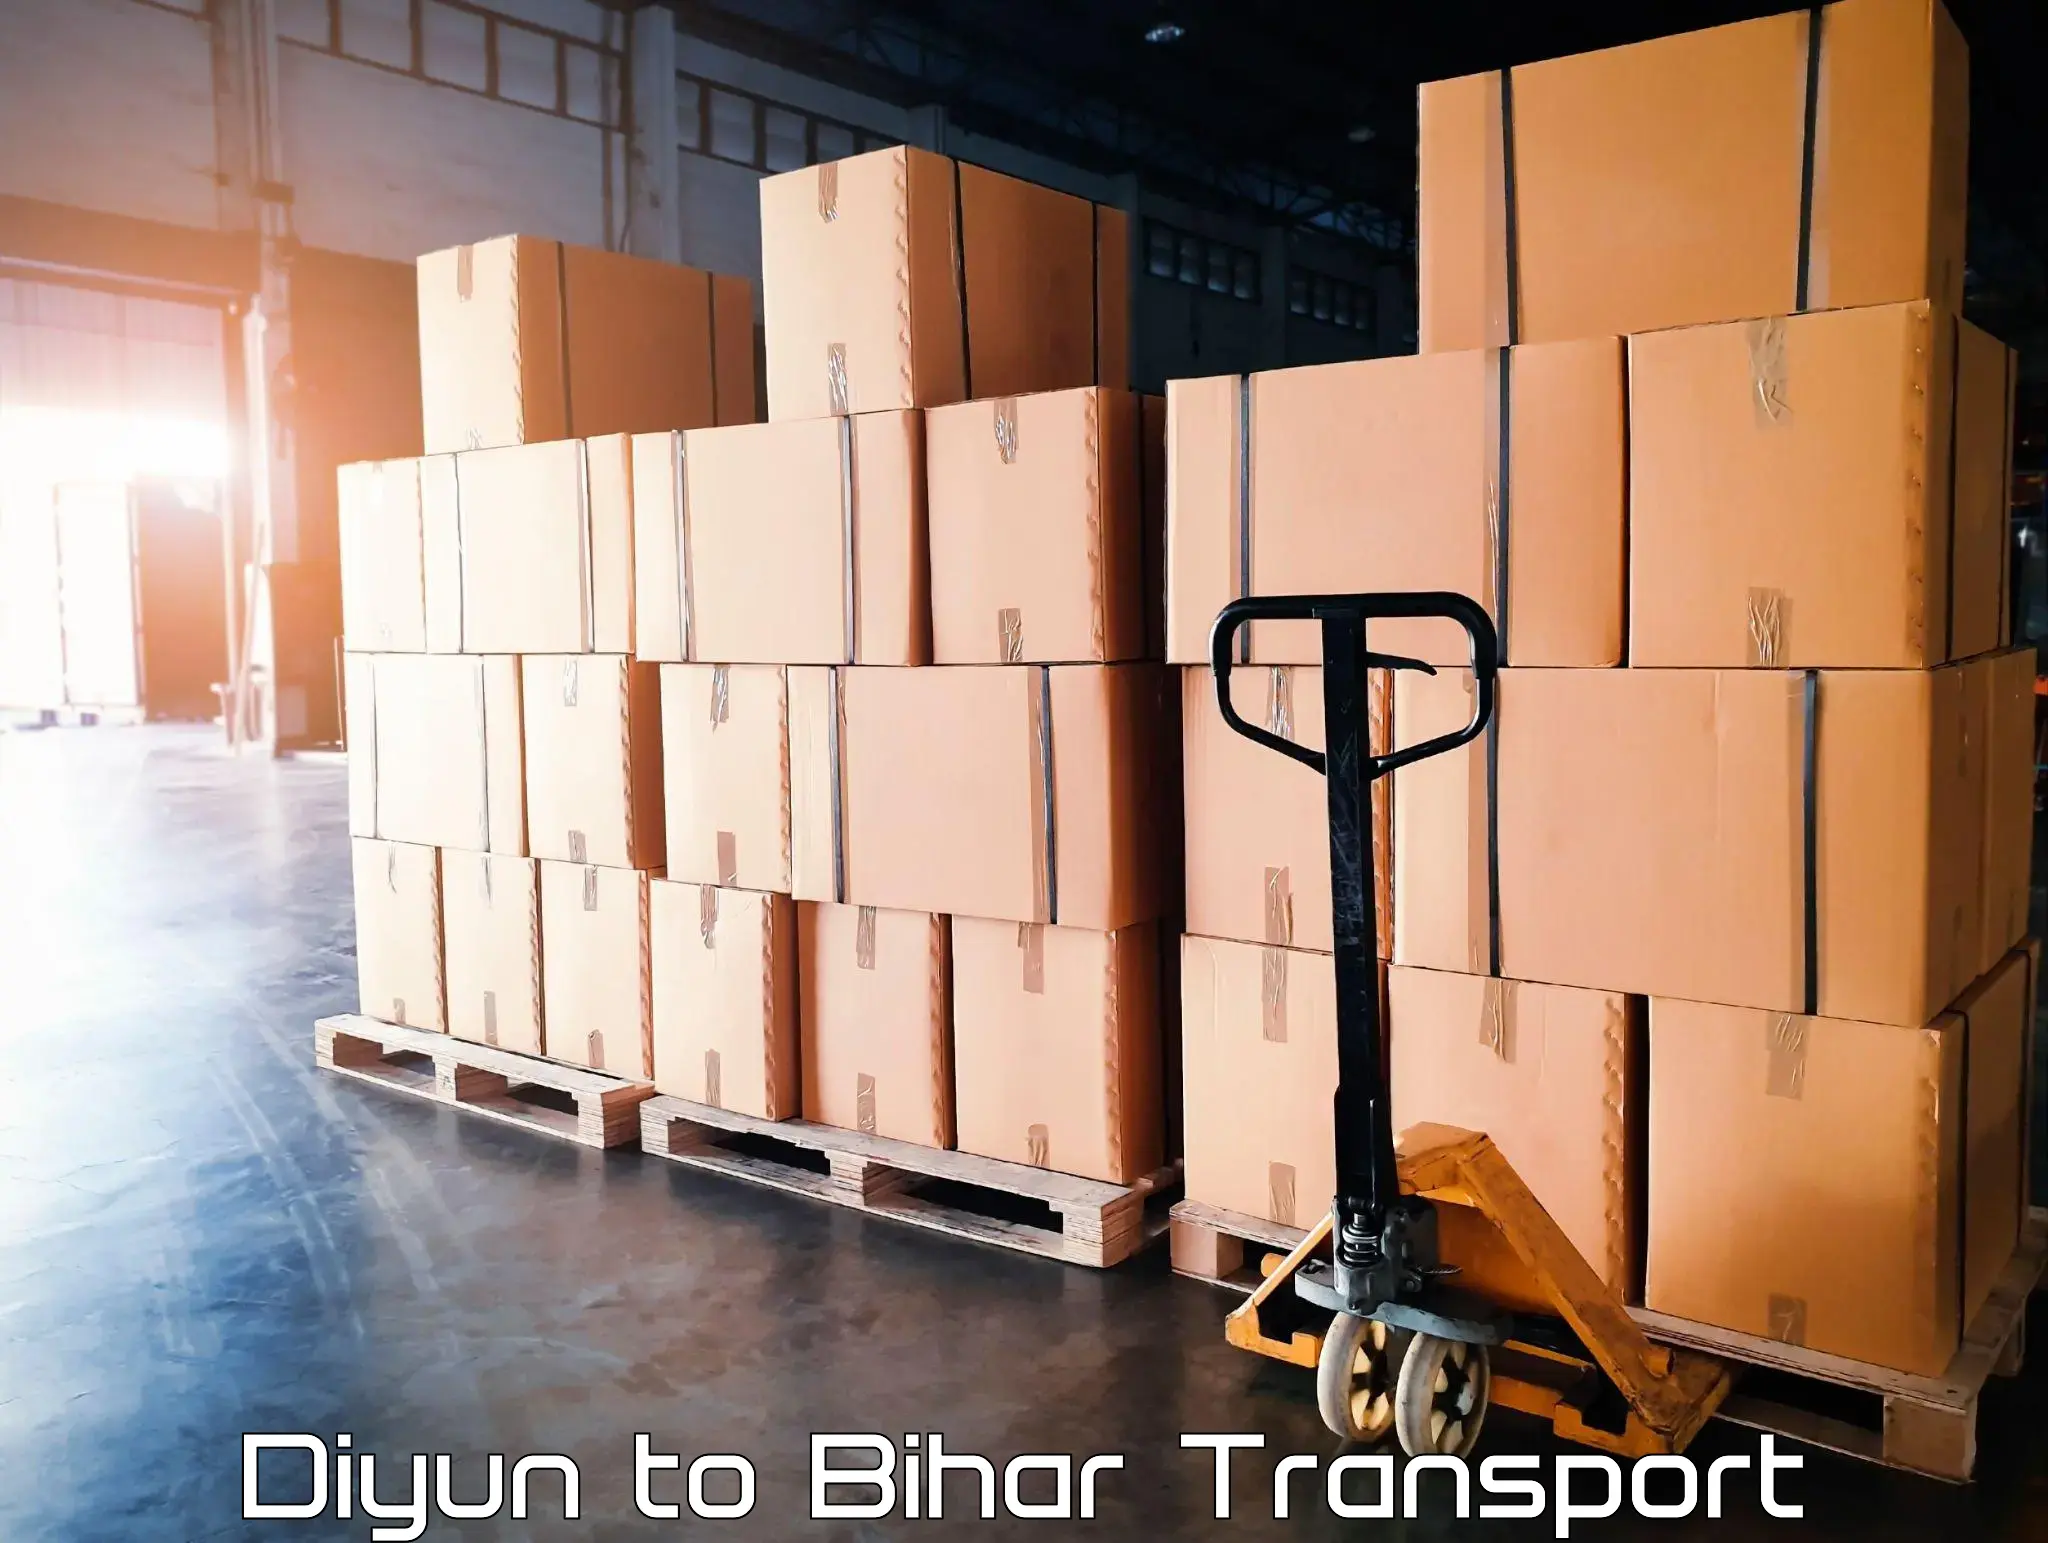 Vehicle transport services Diyun to Dhaka